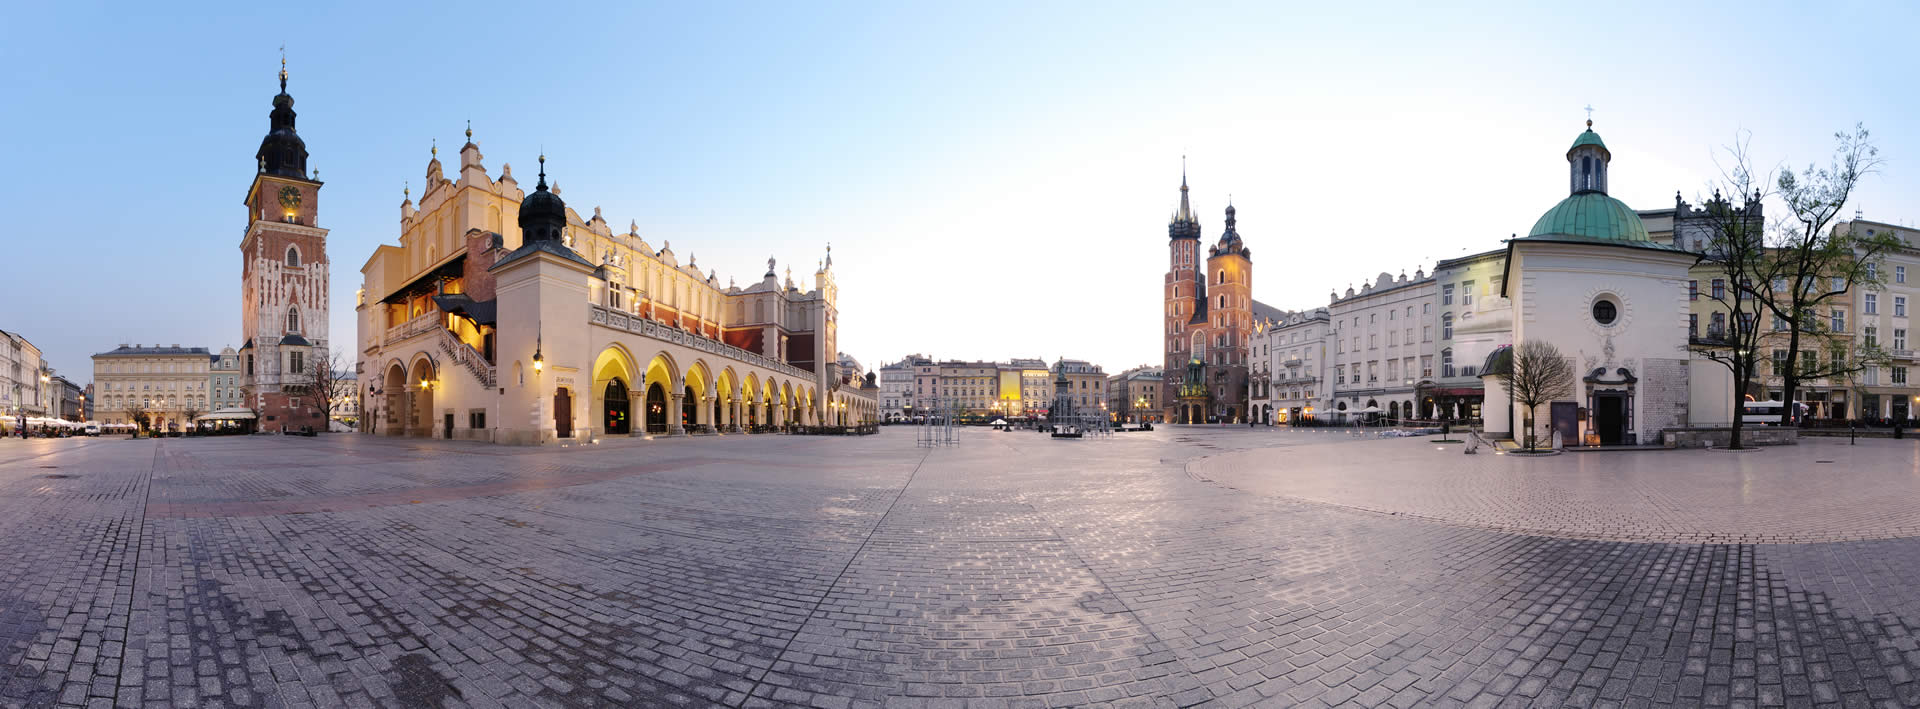 Wydarzenia - chrześcijański speed dating dla mieszkańców Krakowa